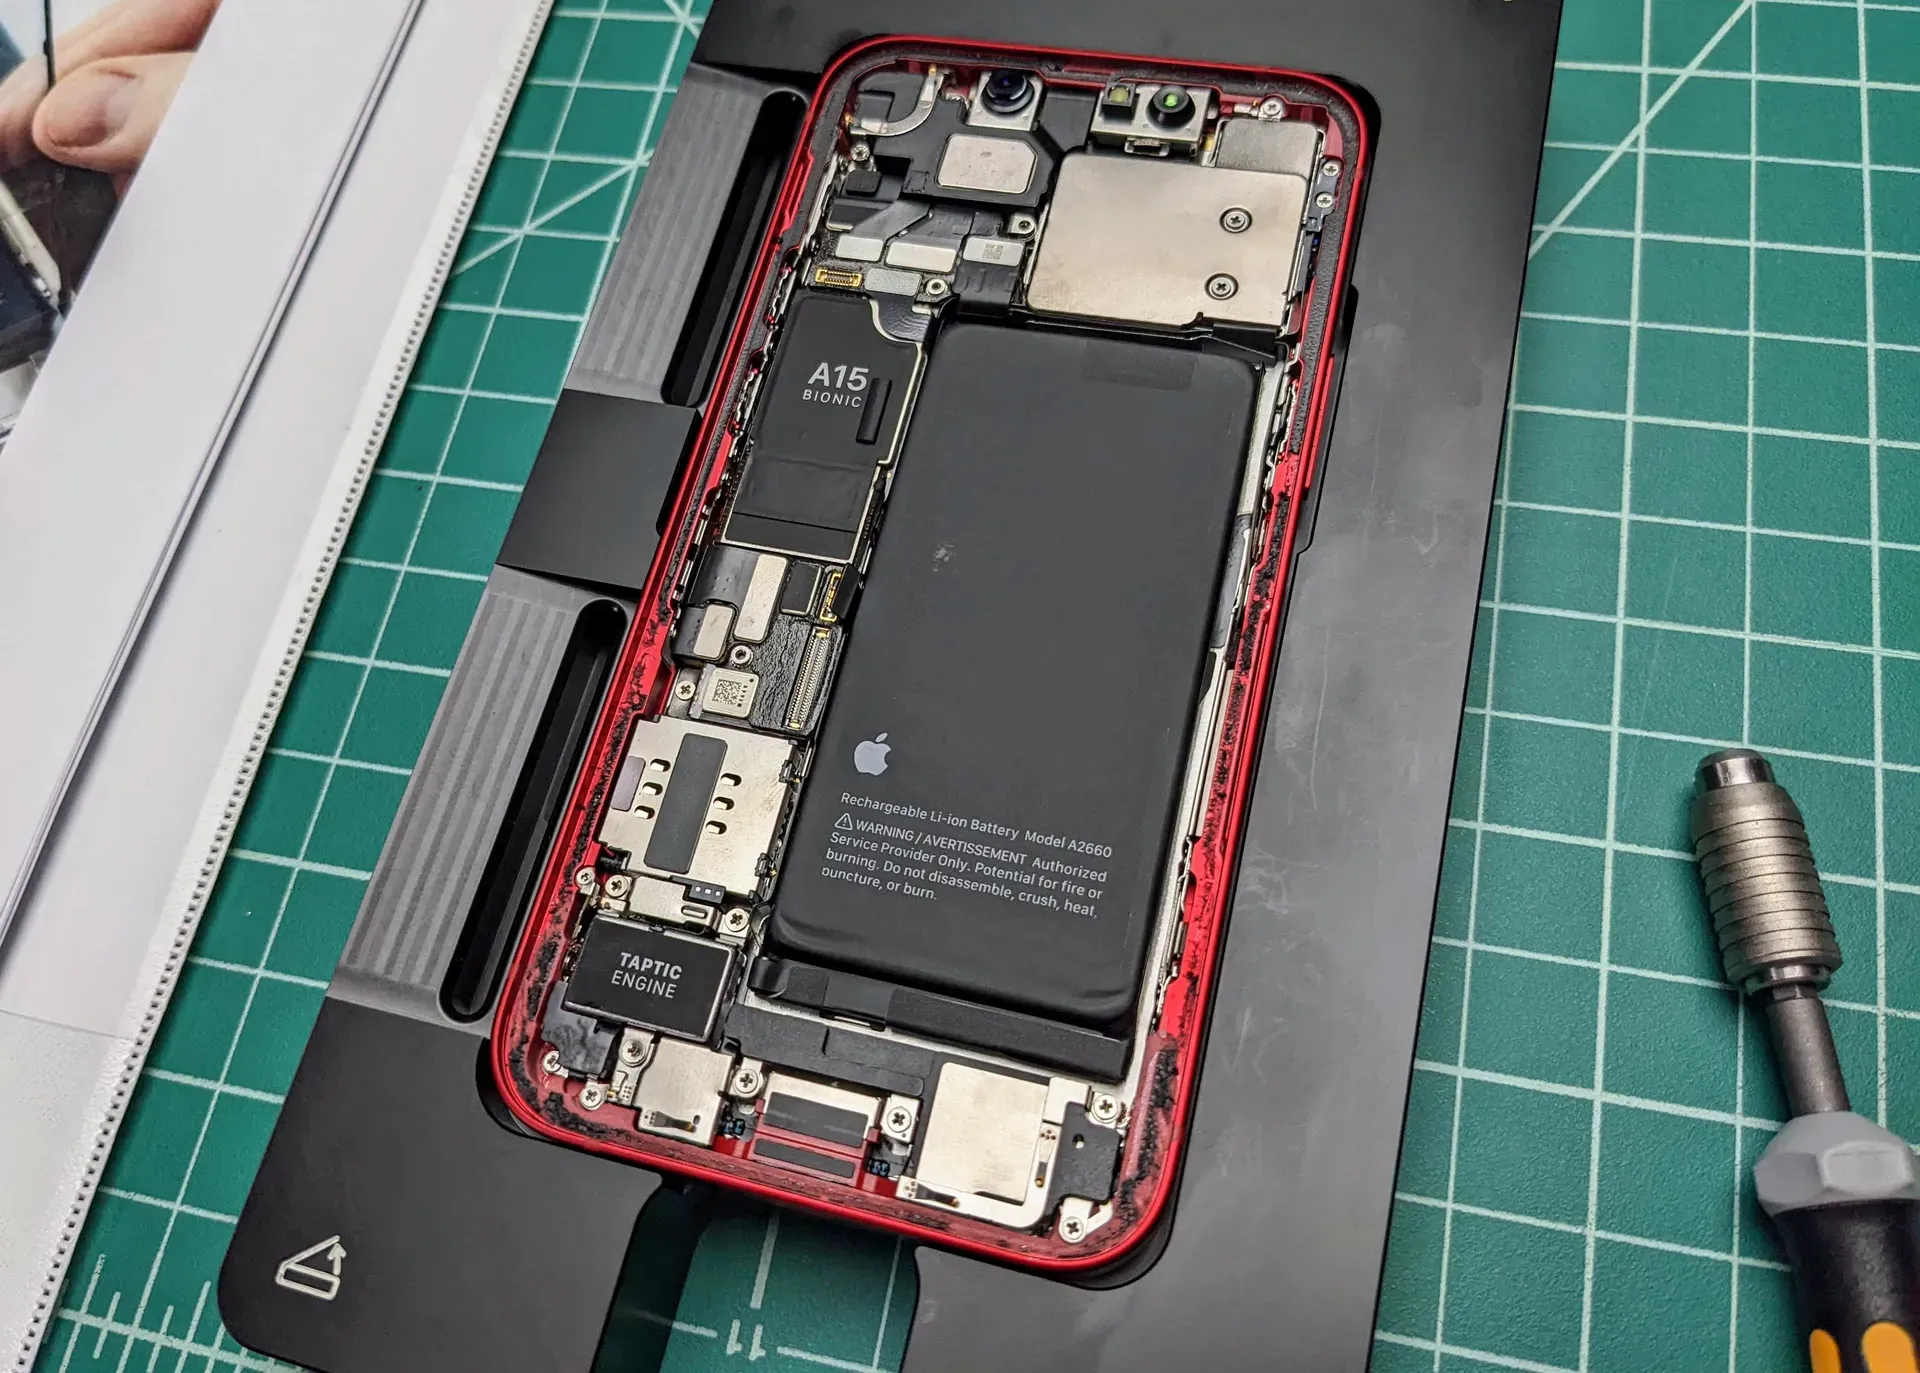 Владелец iPhone заказал набор для замены батареи — Apple прислала 35 килограмм инструментов